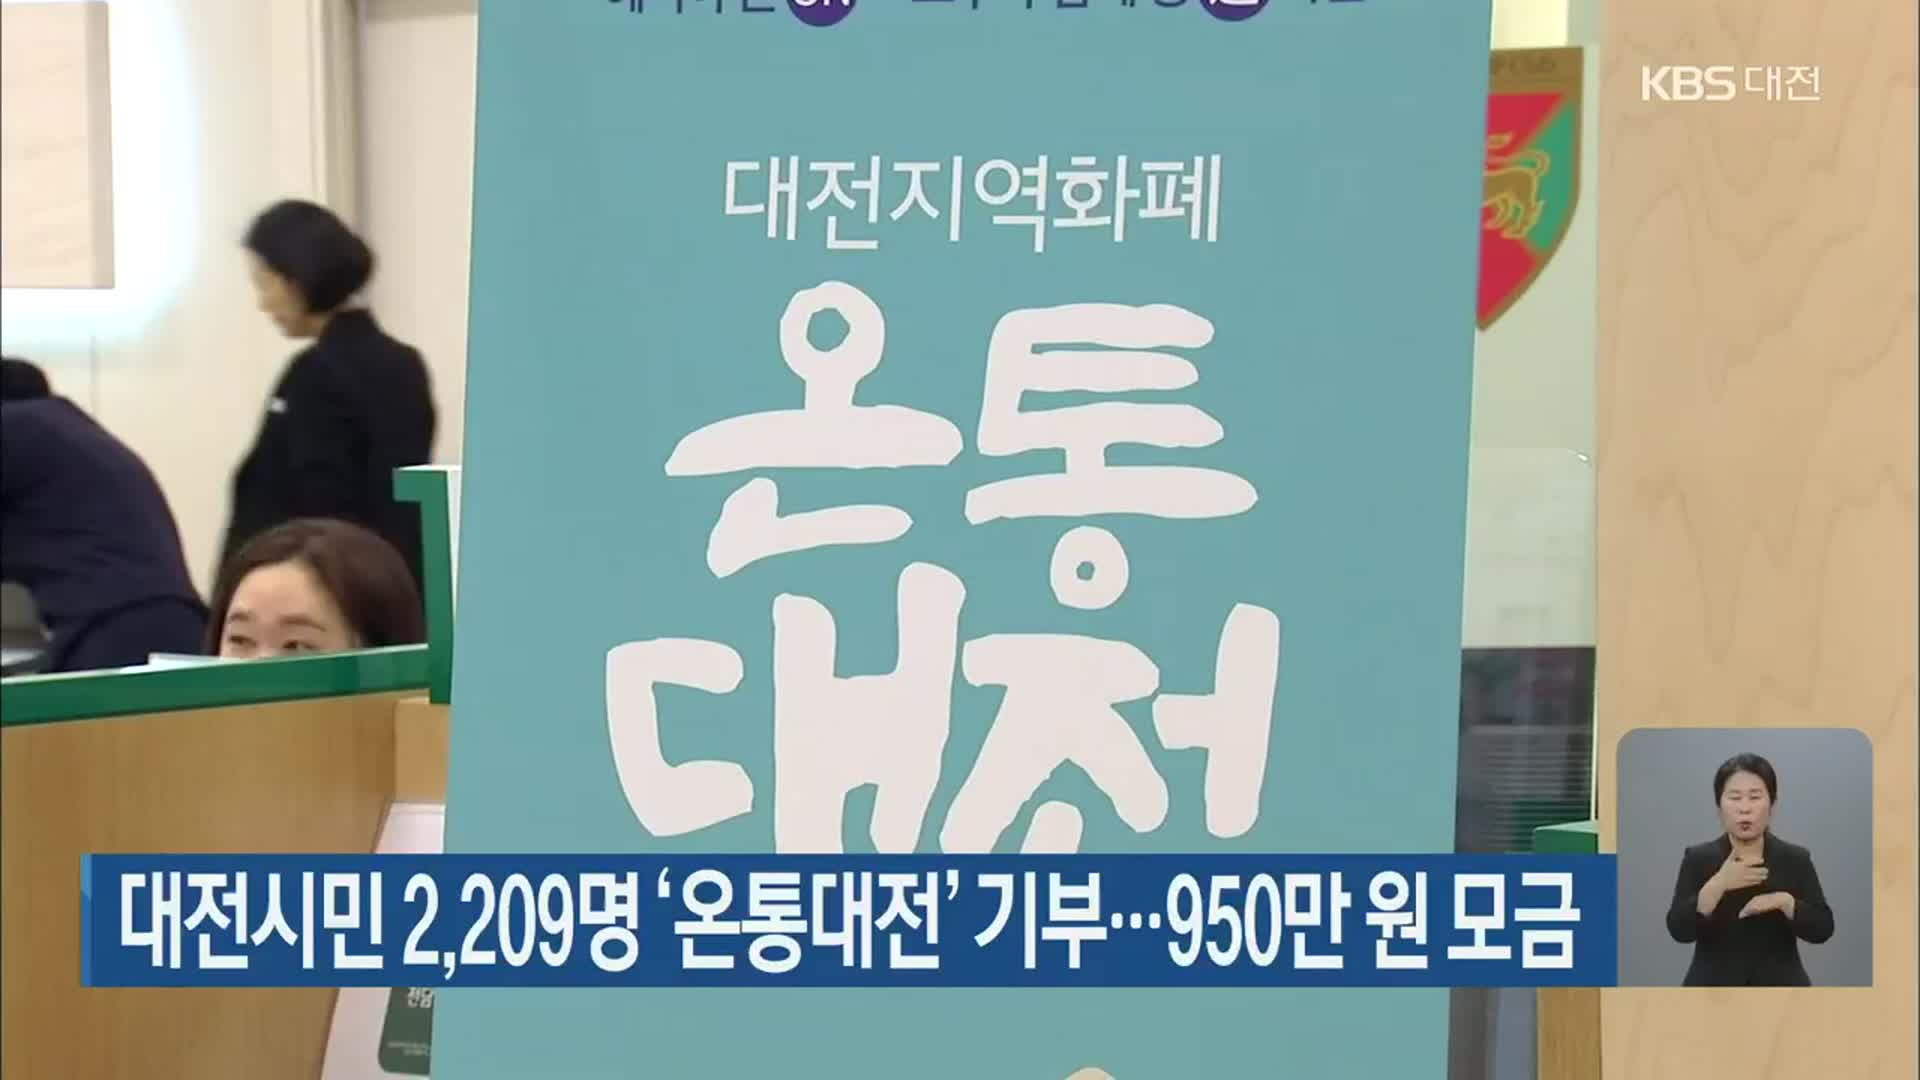 대전시민 2,209명 ‘온통대전’ 기부…950만 원 모금 